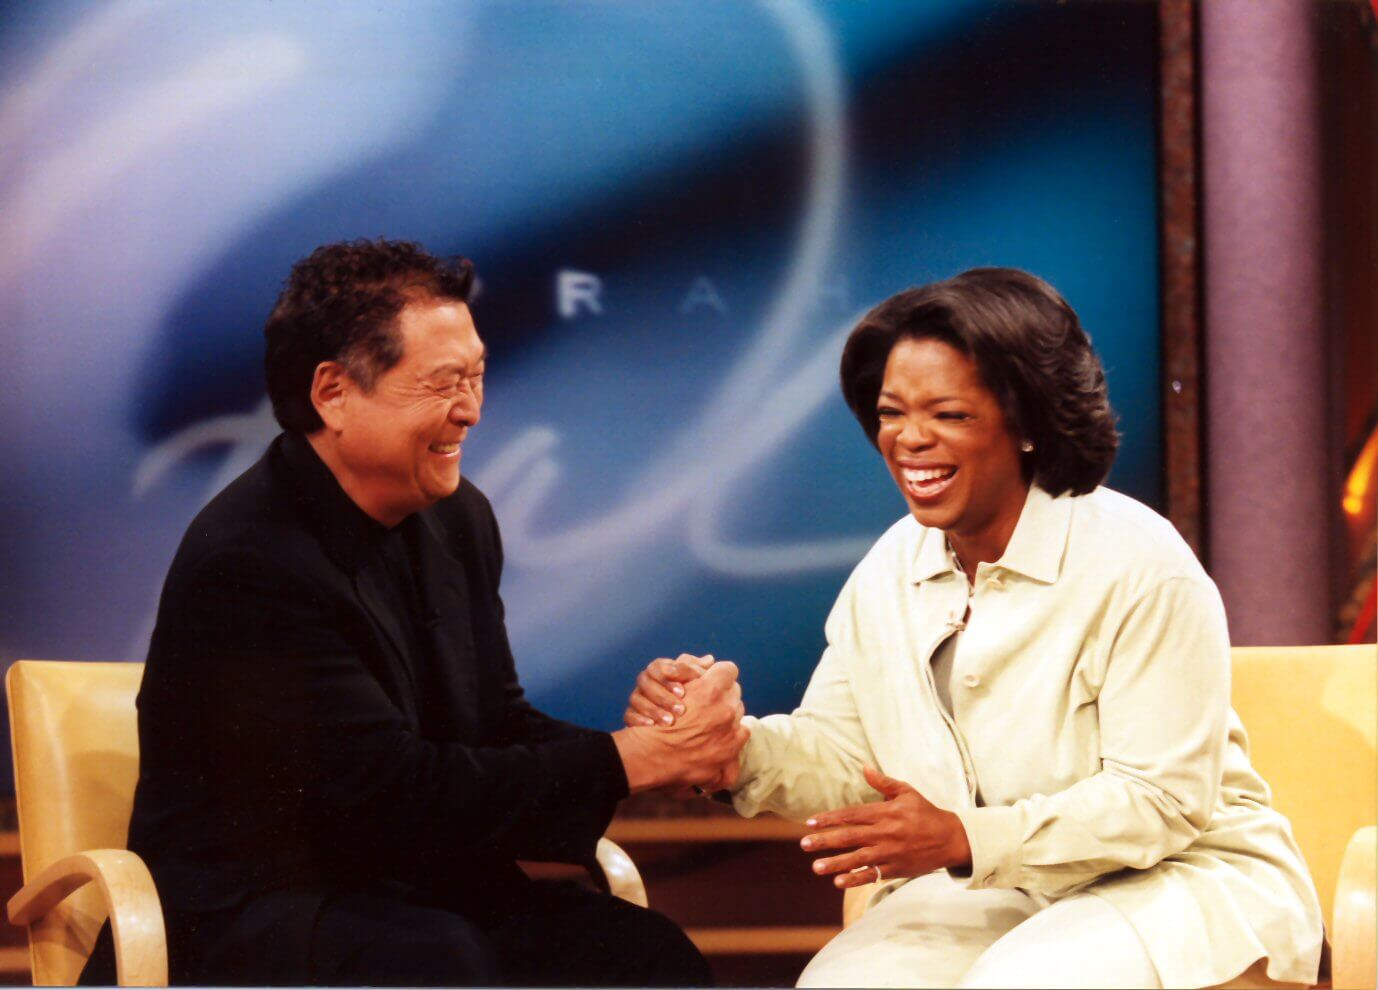 Robert Kiyosaki on Oprah